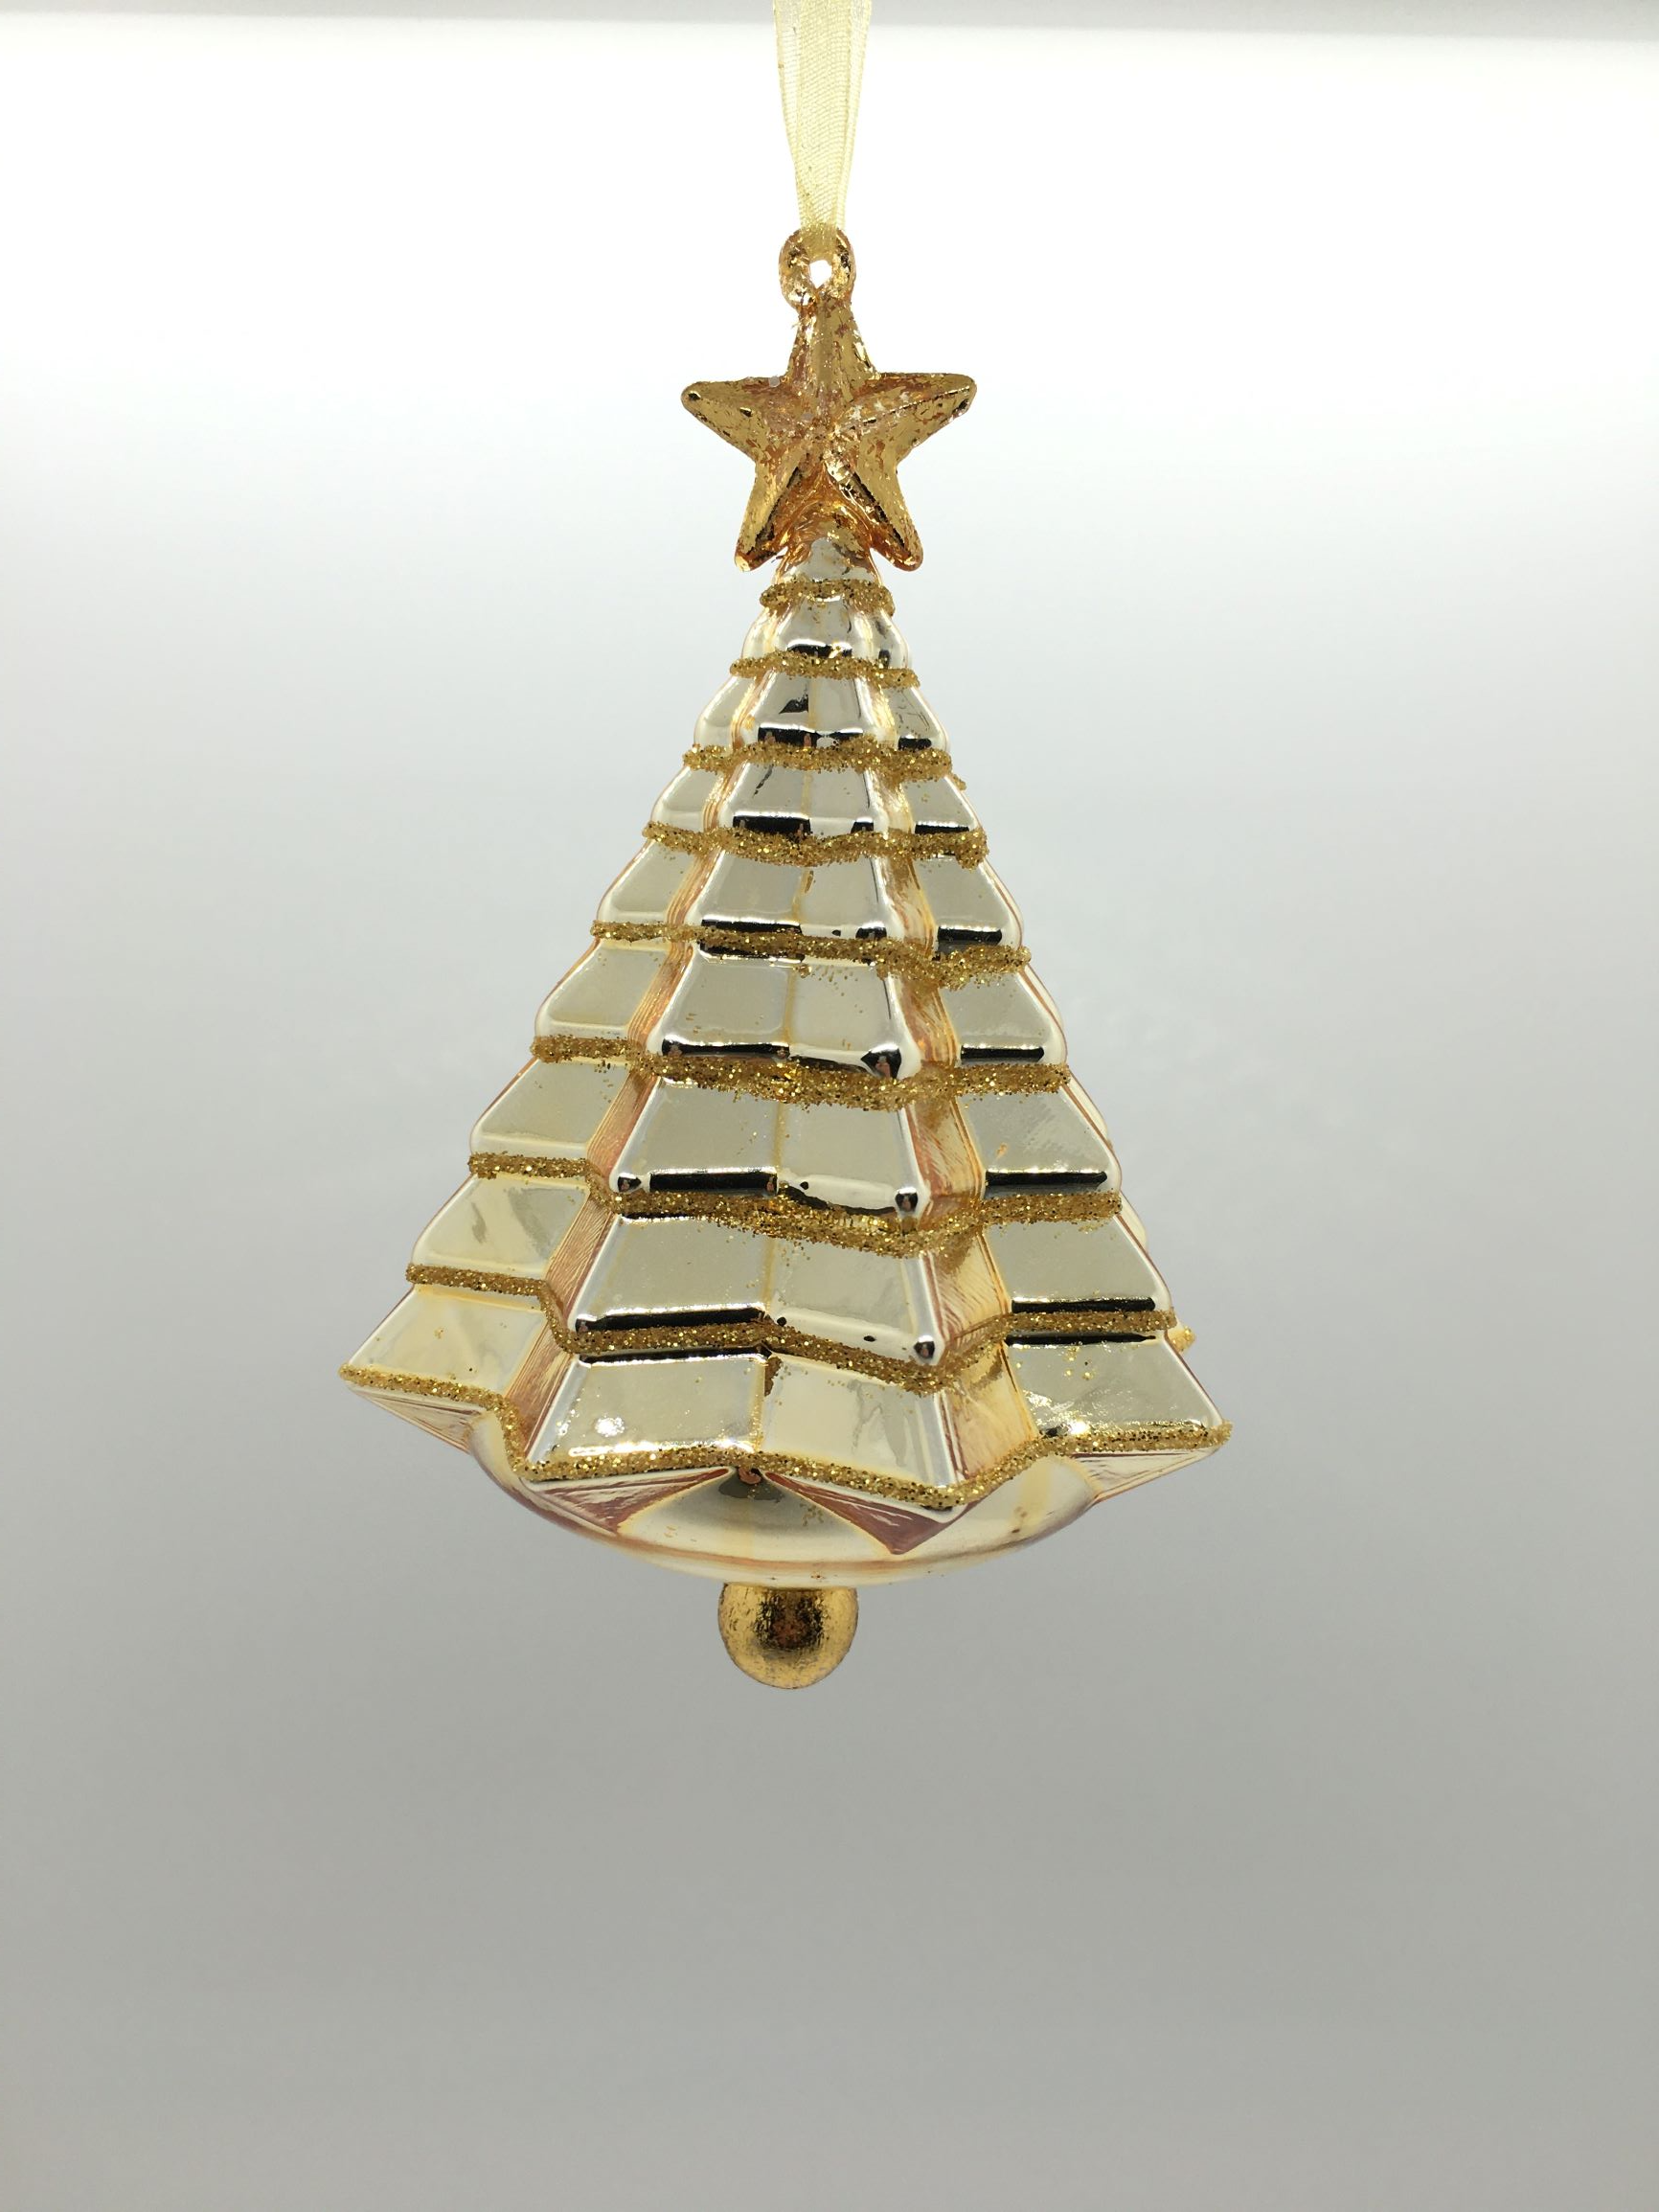 Pino in vetro color oro e glitter con stella. Decorazione per albero di Natale. Dimensione: cm 9, altezza cm 14